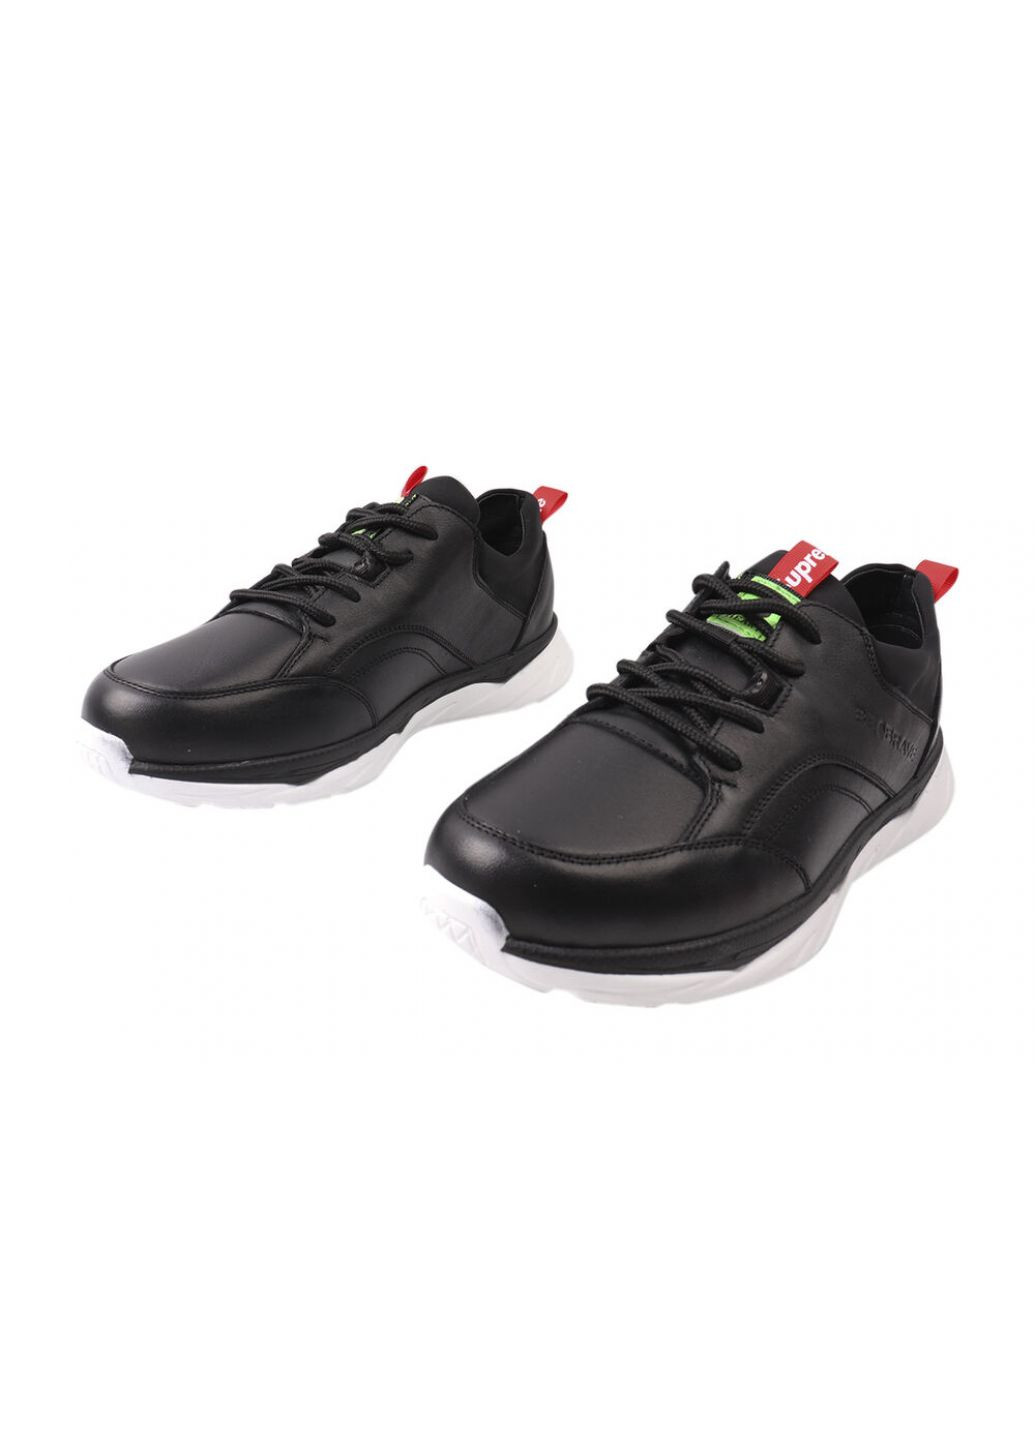 Черные кроссовки мужские из натуральной кожи, на низком ходу, на шнуровке, цвет черный, украина Brave 187-21DTS